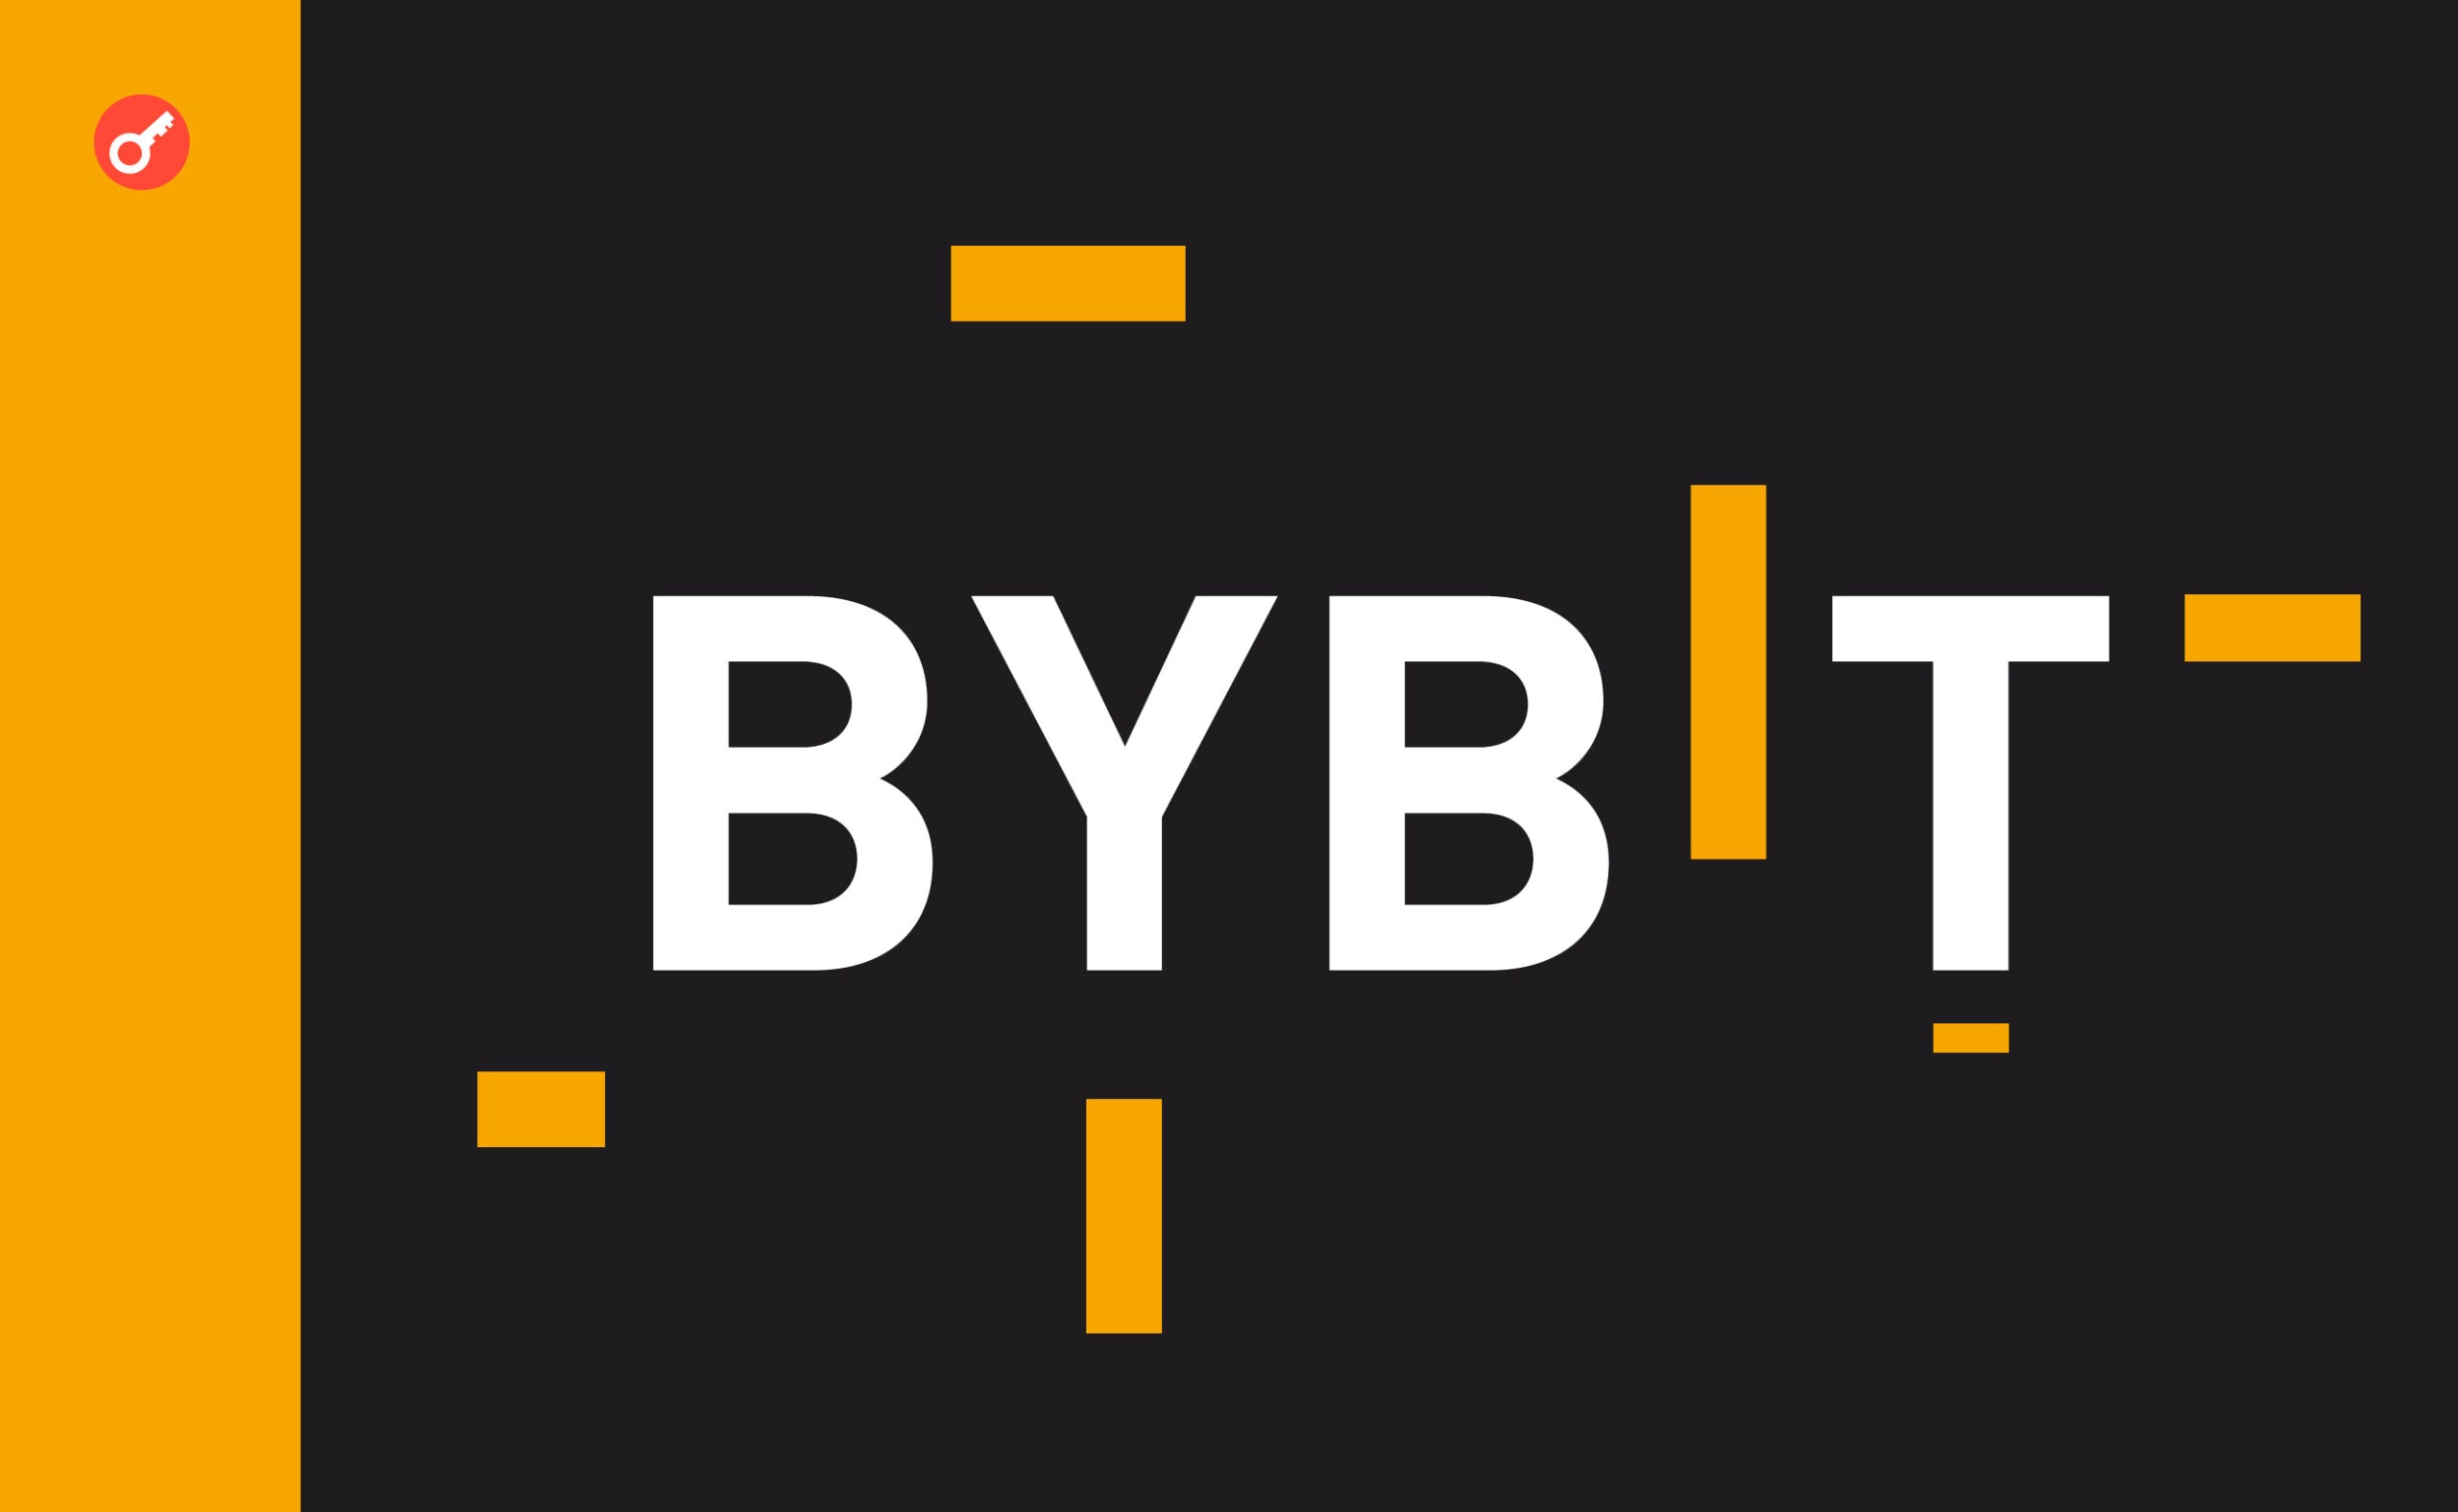 Bybit Web3 открыл сезон L2-проектов в сети биткоина с аирдропа на 100 000 MERL. Заглавный коллаж новости.